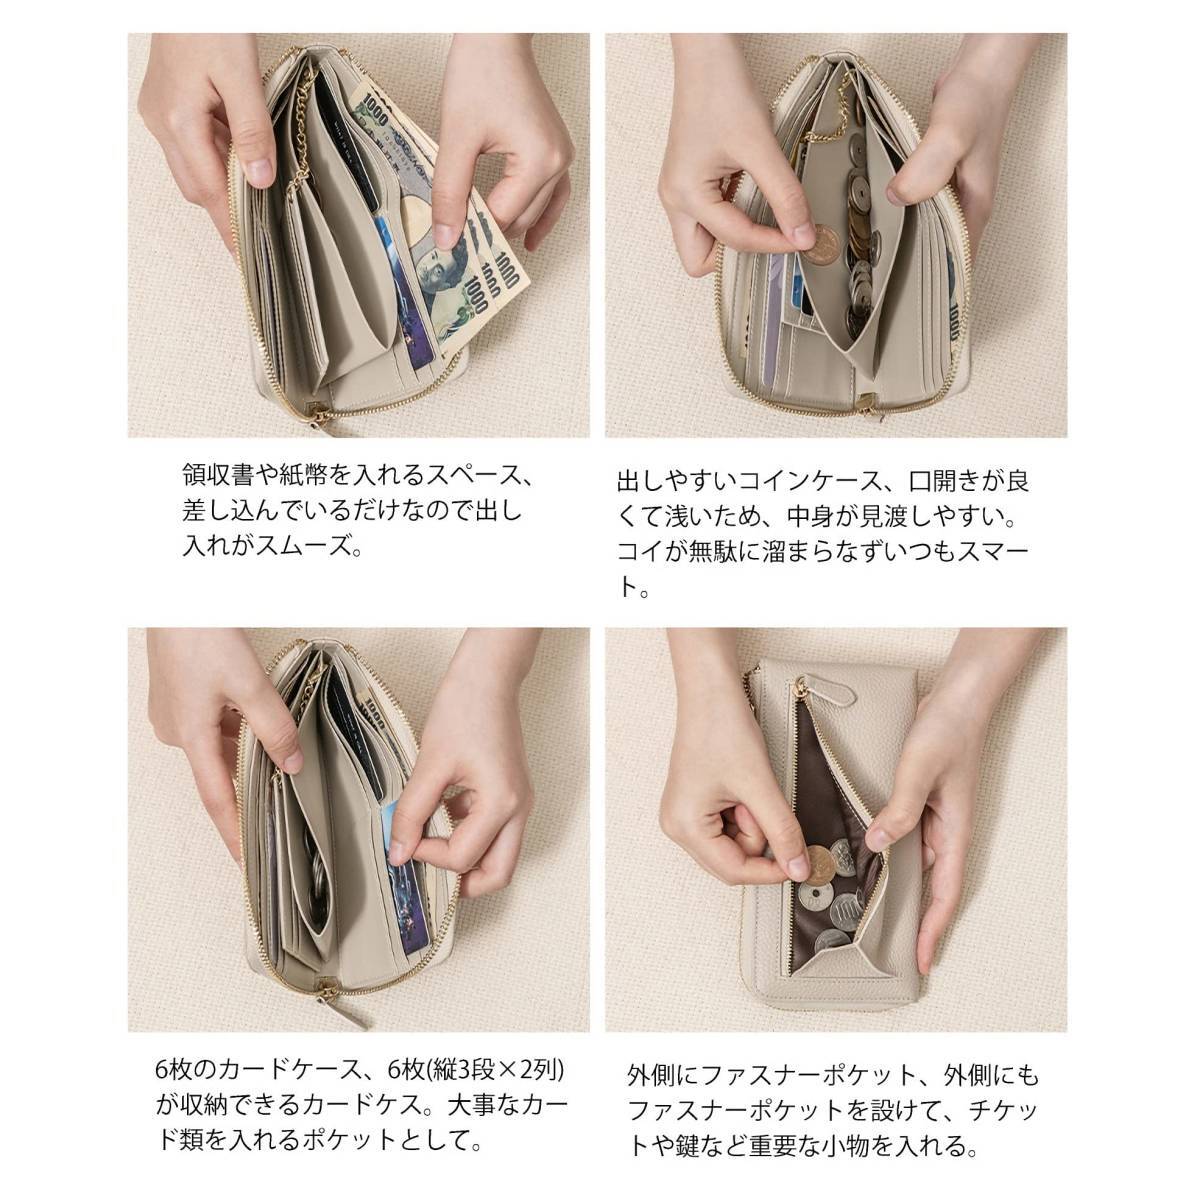 ”11【新品・ベージュ】長財布 本革 カードケース カード入れ じゃばら 小銭入れ コインケース スキミング防止 多機能 大容量